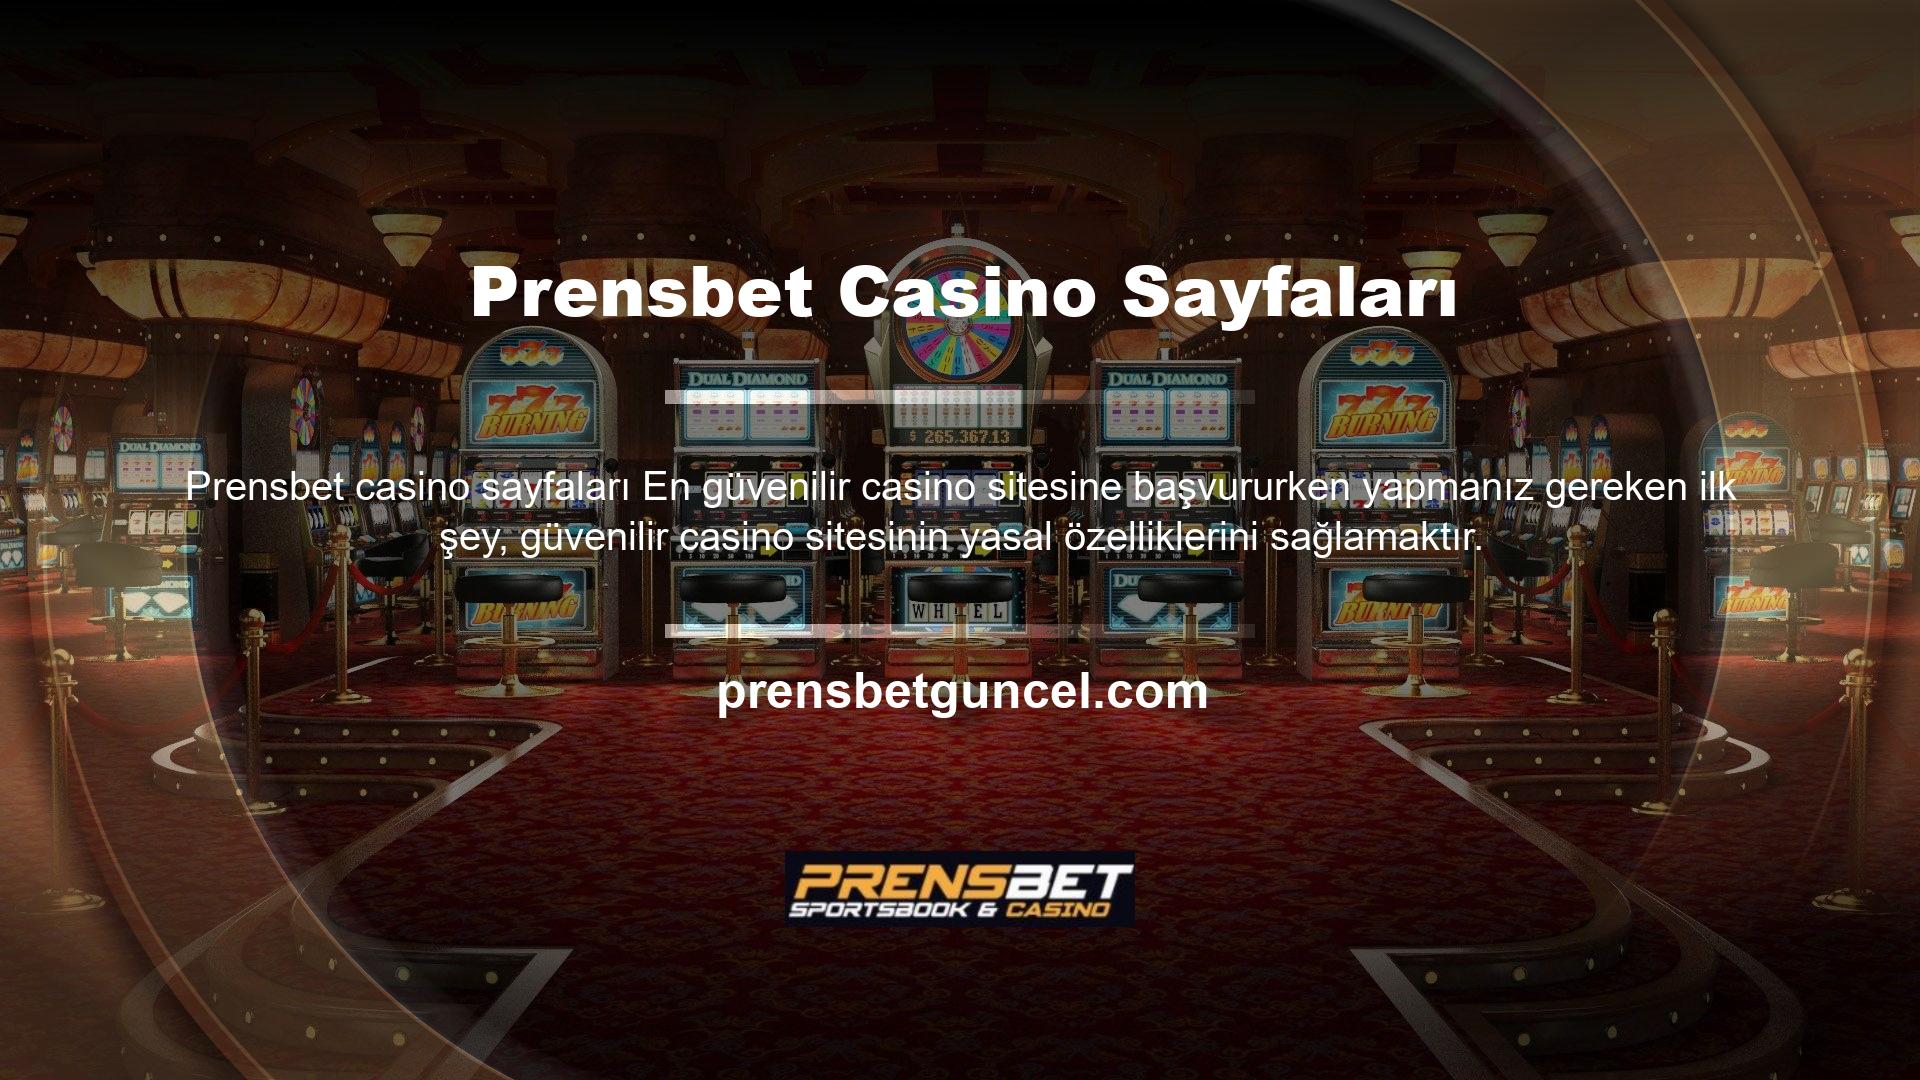 Prensbet Casino web sitesinde bir hesap açmak, para yatırmak ve oyun oynamak istiyorsanız, önce şirket bilgilerini öğrenin